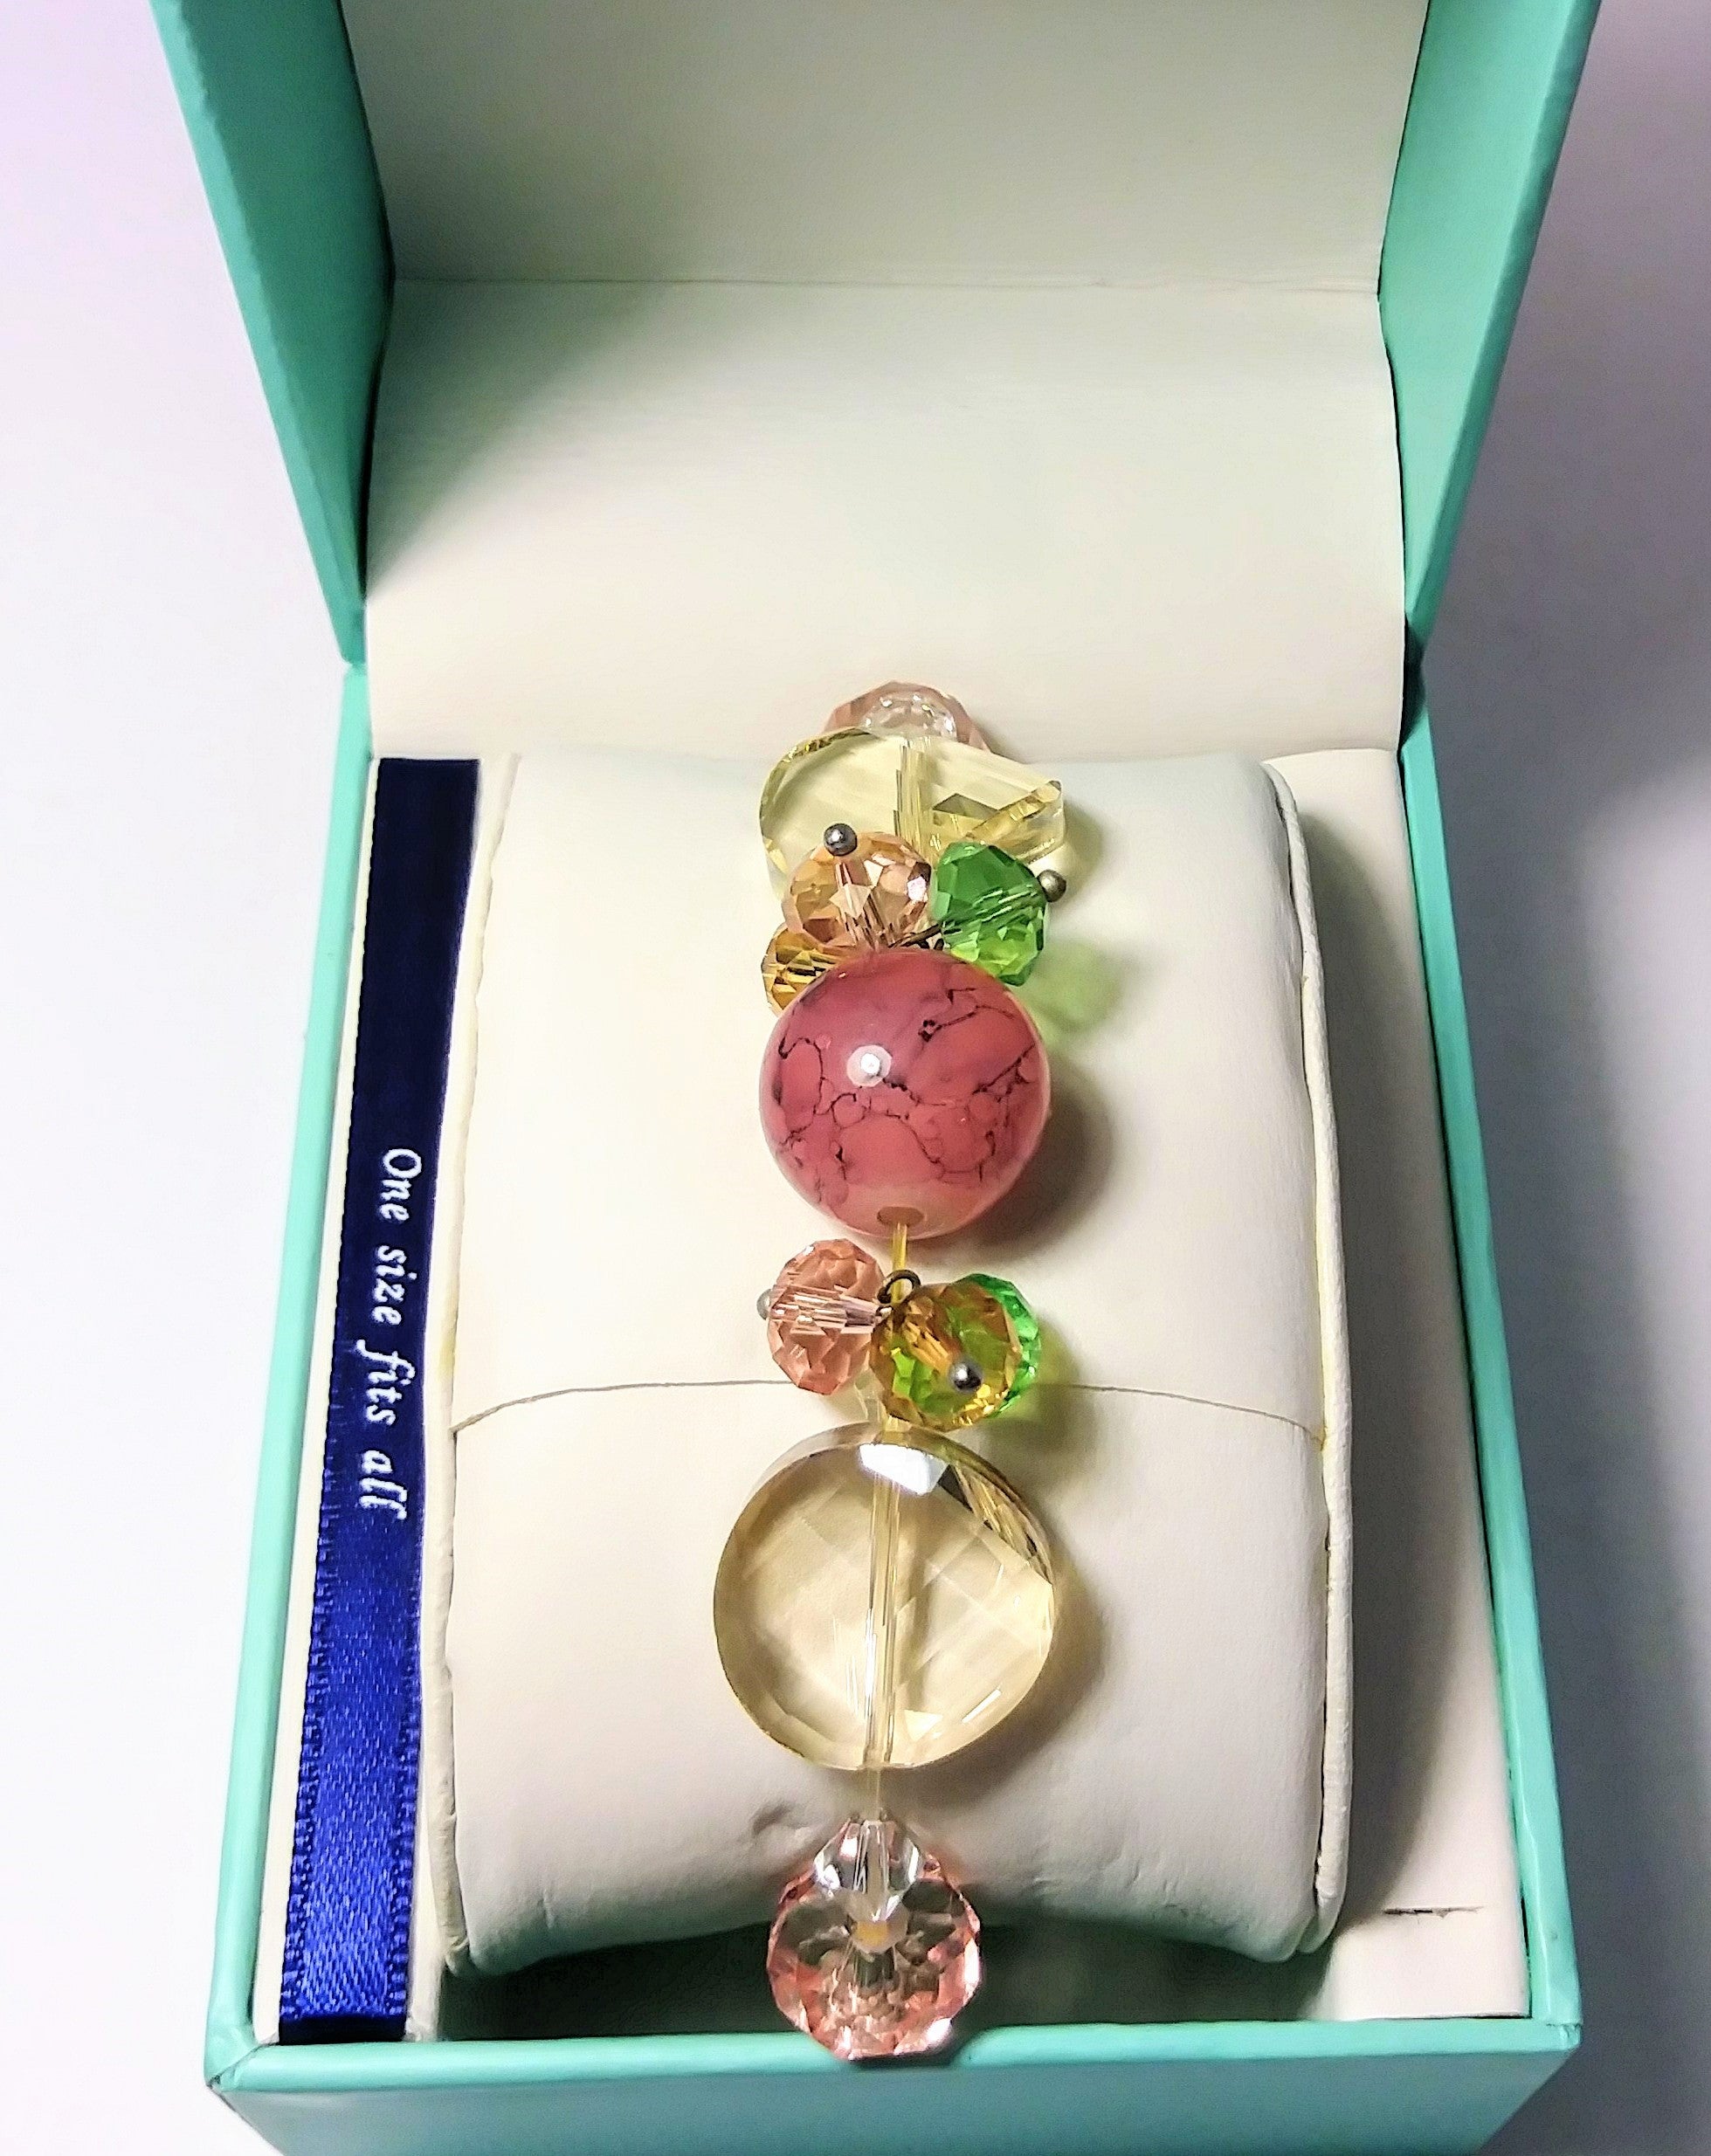 Pink and multiple color jade and gemstones bracelet